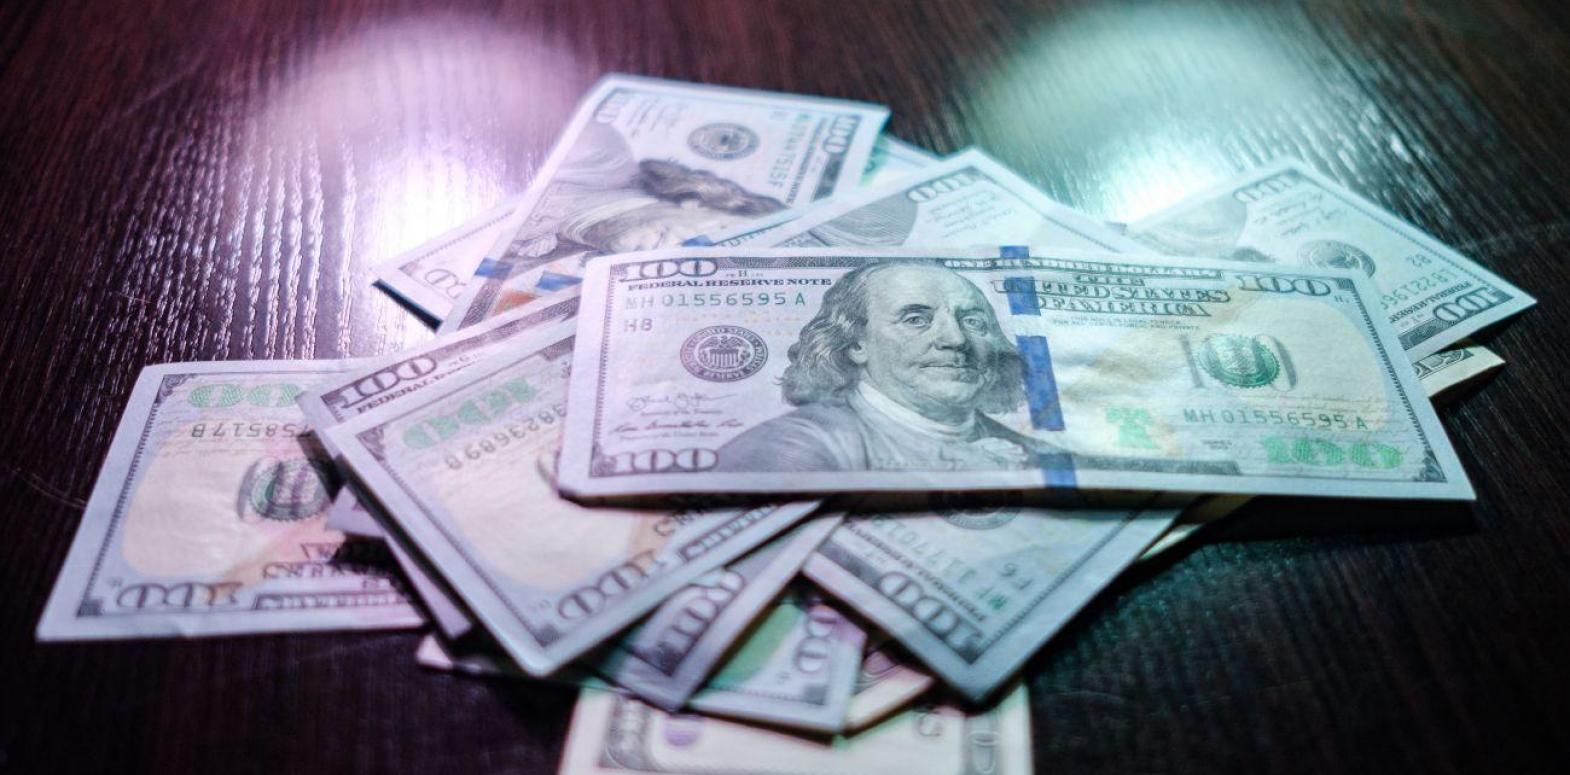 НБУ резко снизил официальный курс доллара к гривне